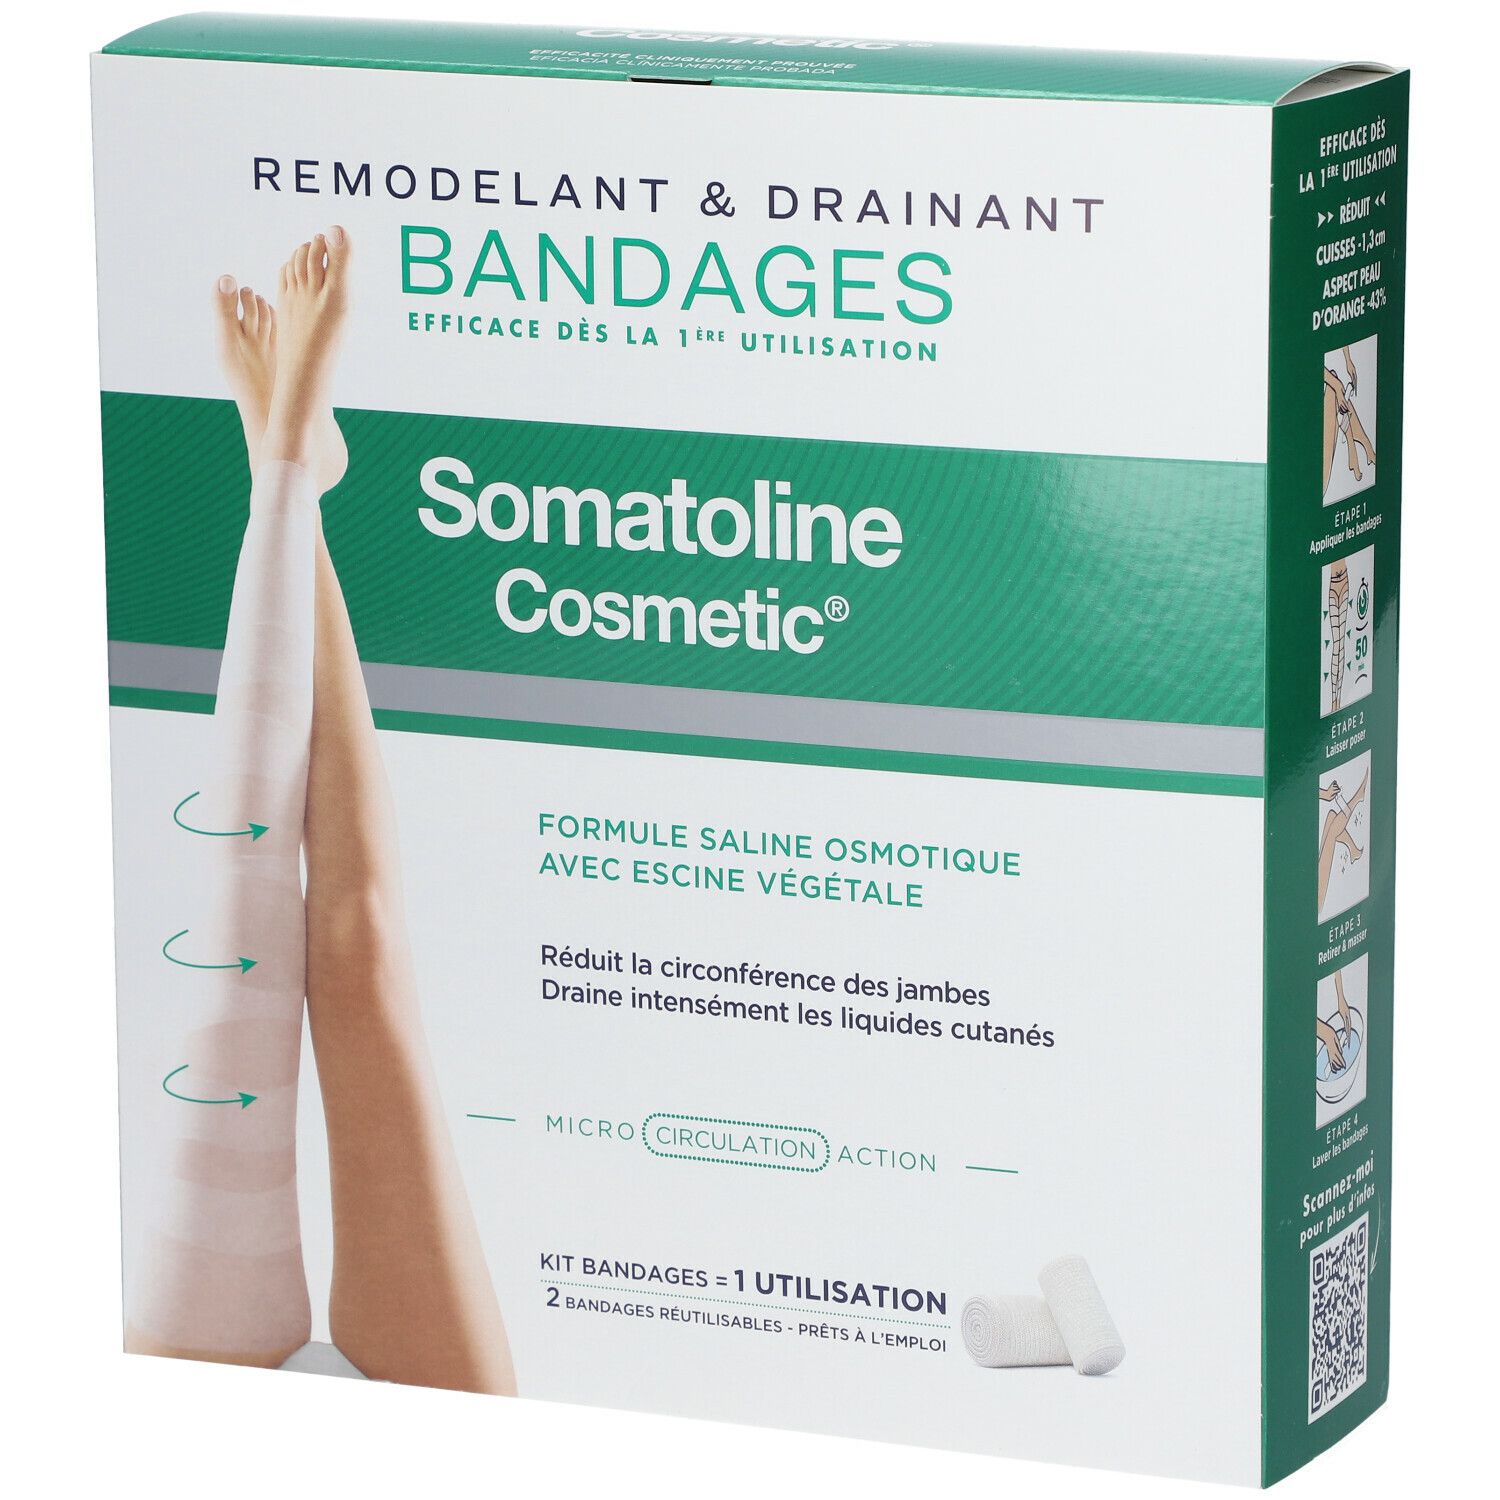 Somatoline Cosmetic® Bandages Remodelants & Drainants